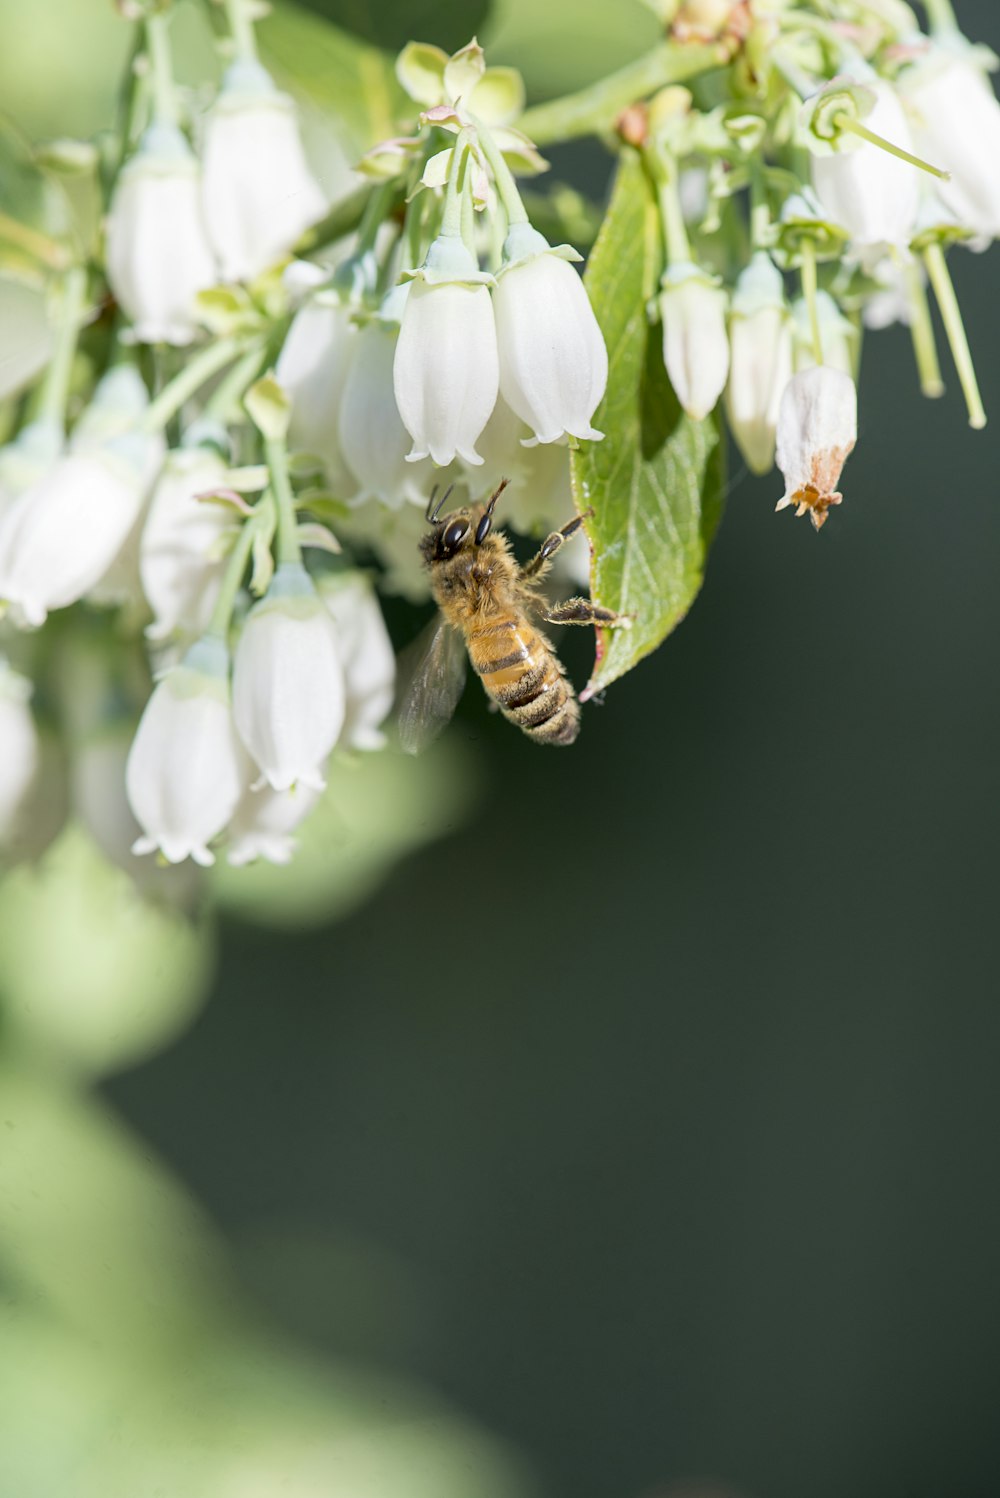 蜂は緑の葉を持つ白い花の上にいます